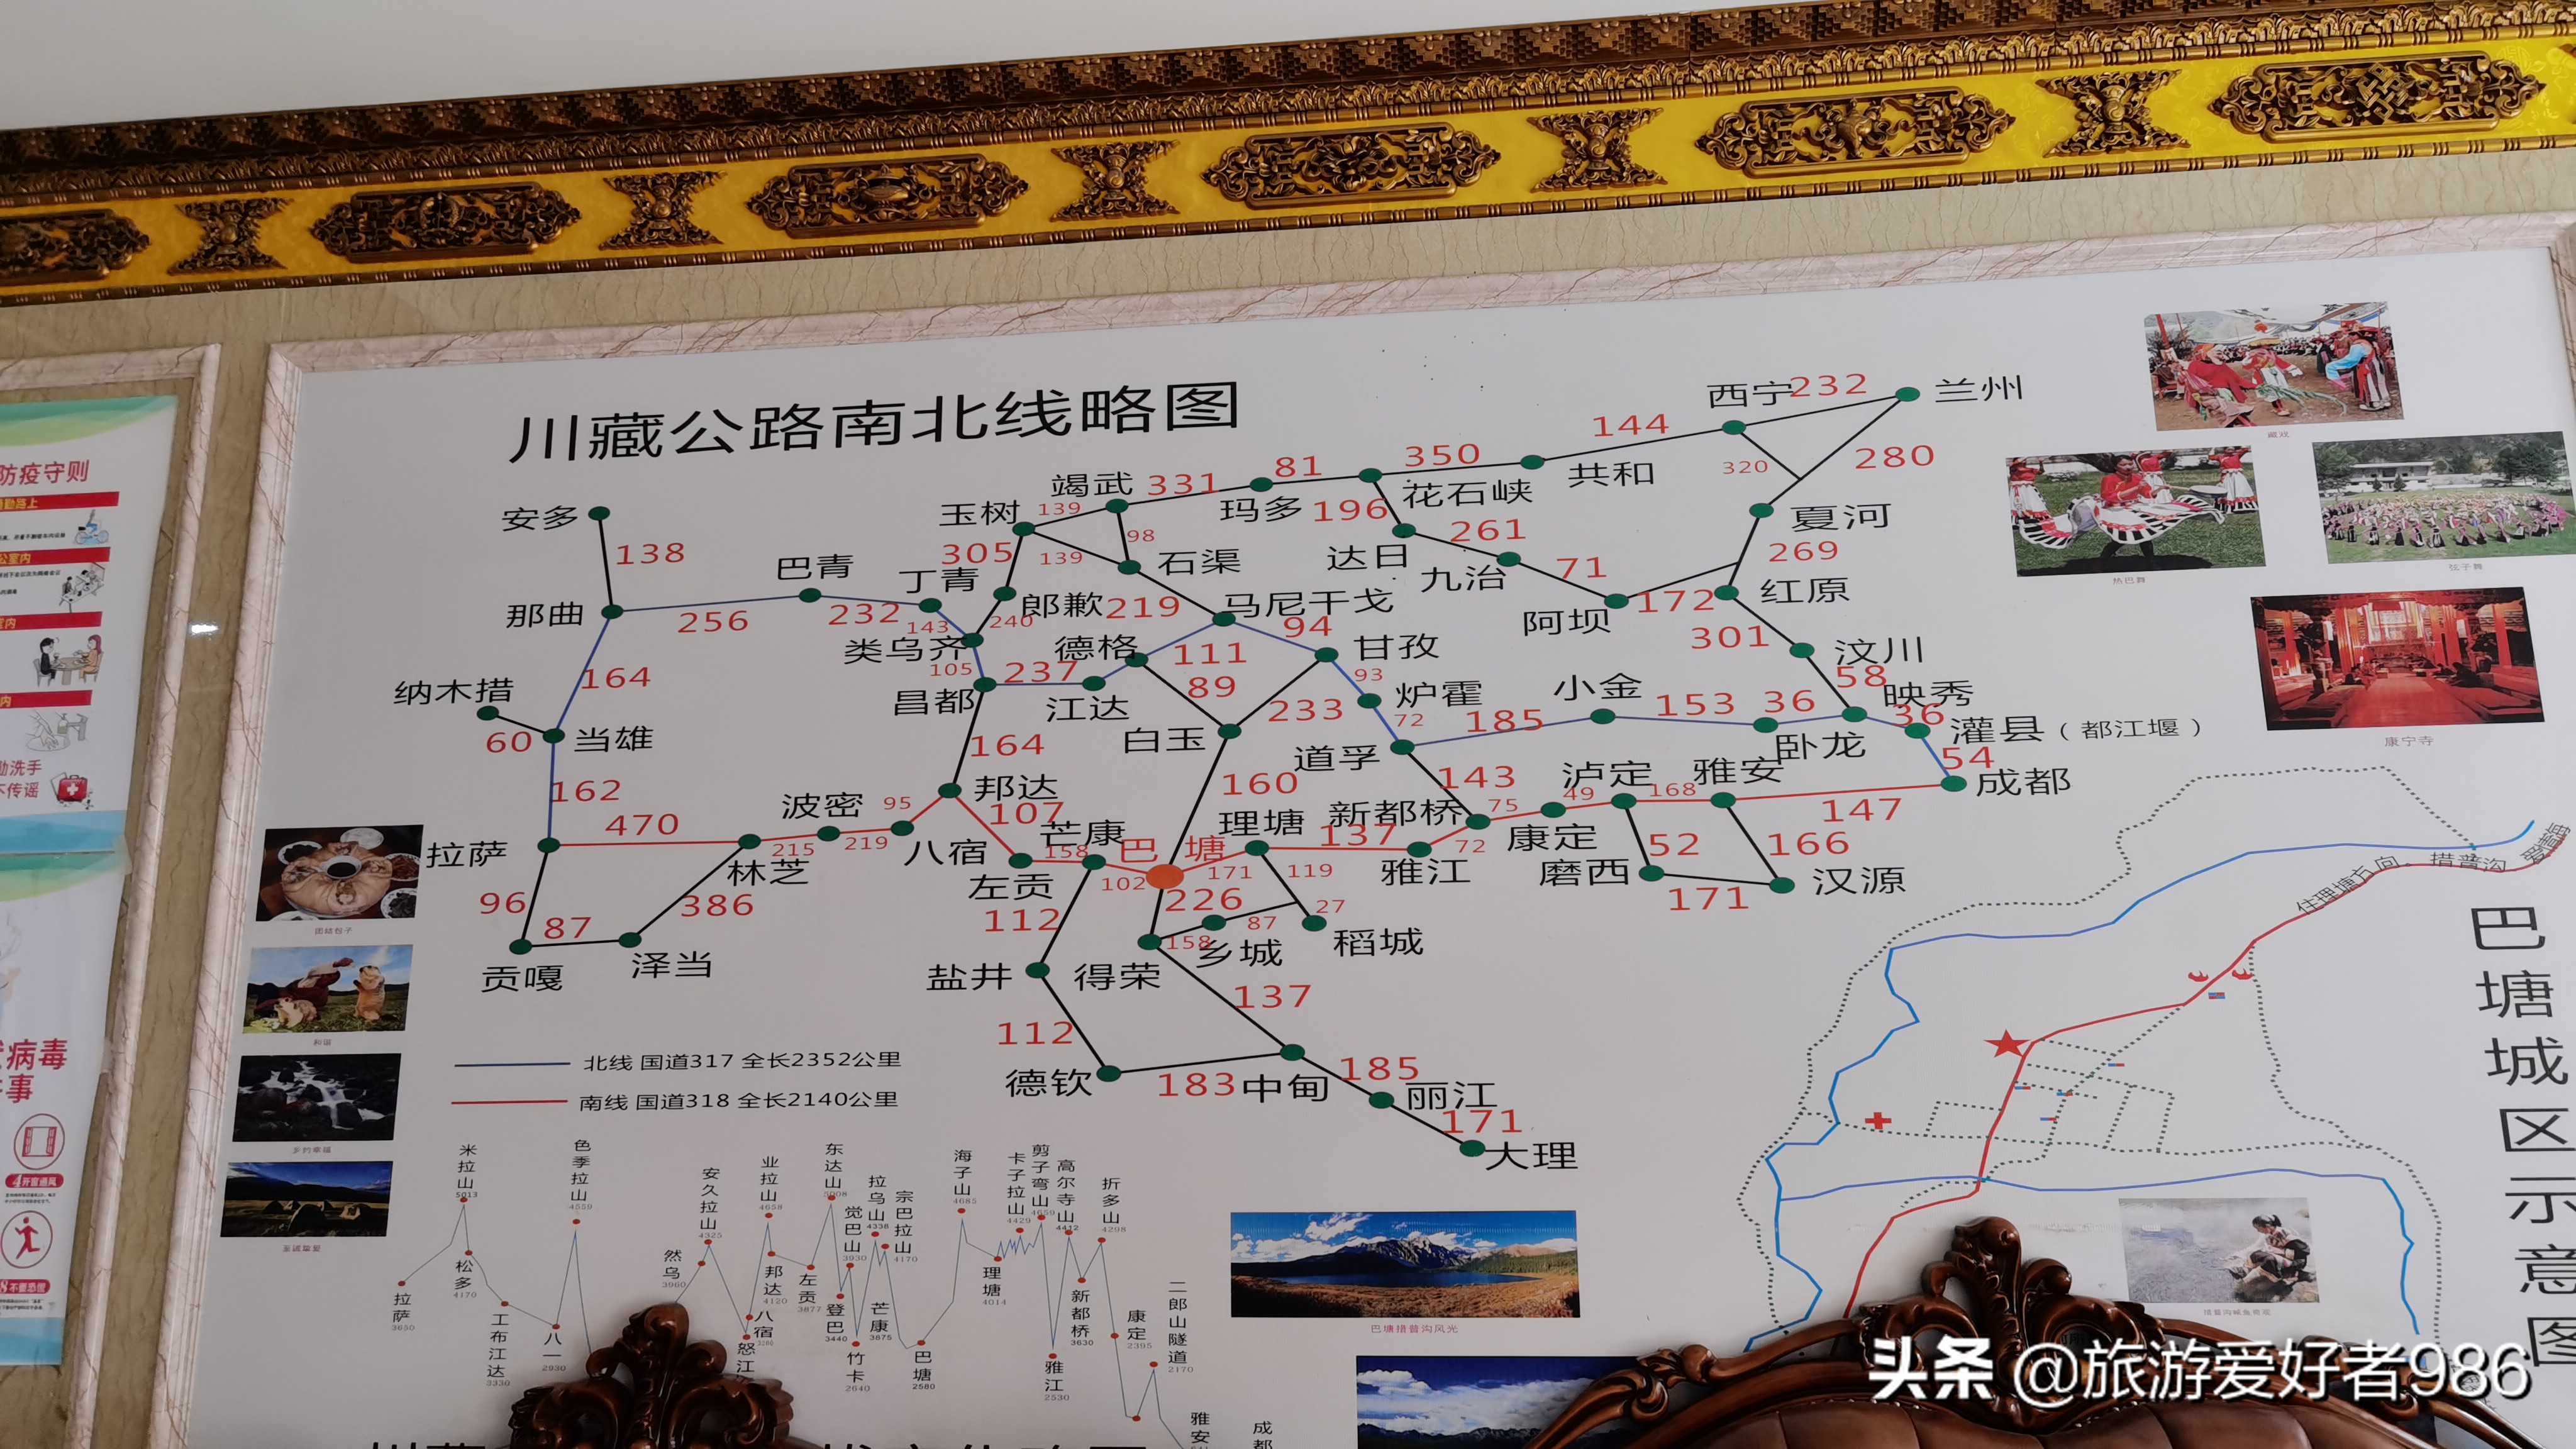 终于圆了西藏自驾梦！1车2人，36天西藏自驾游行程攻略